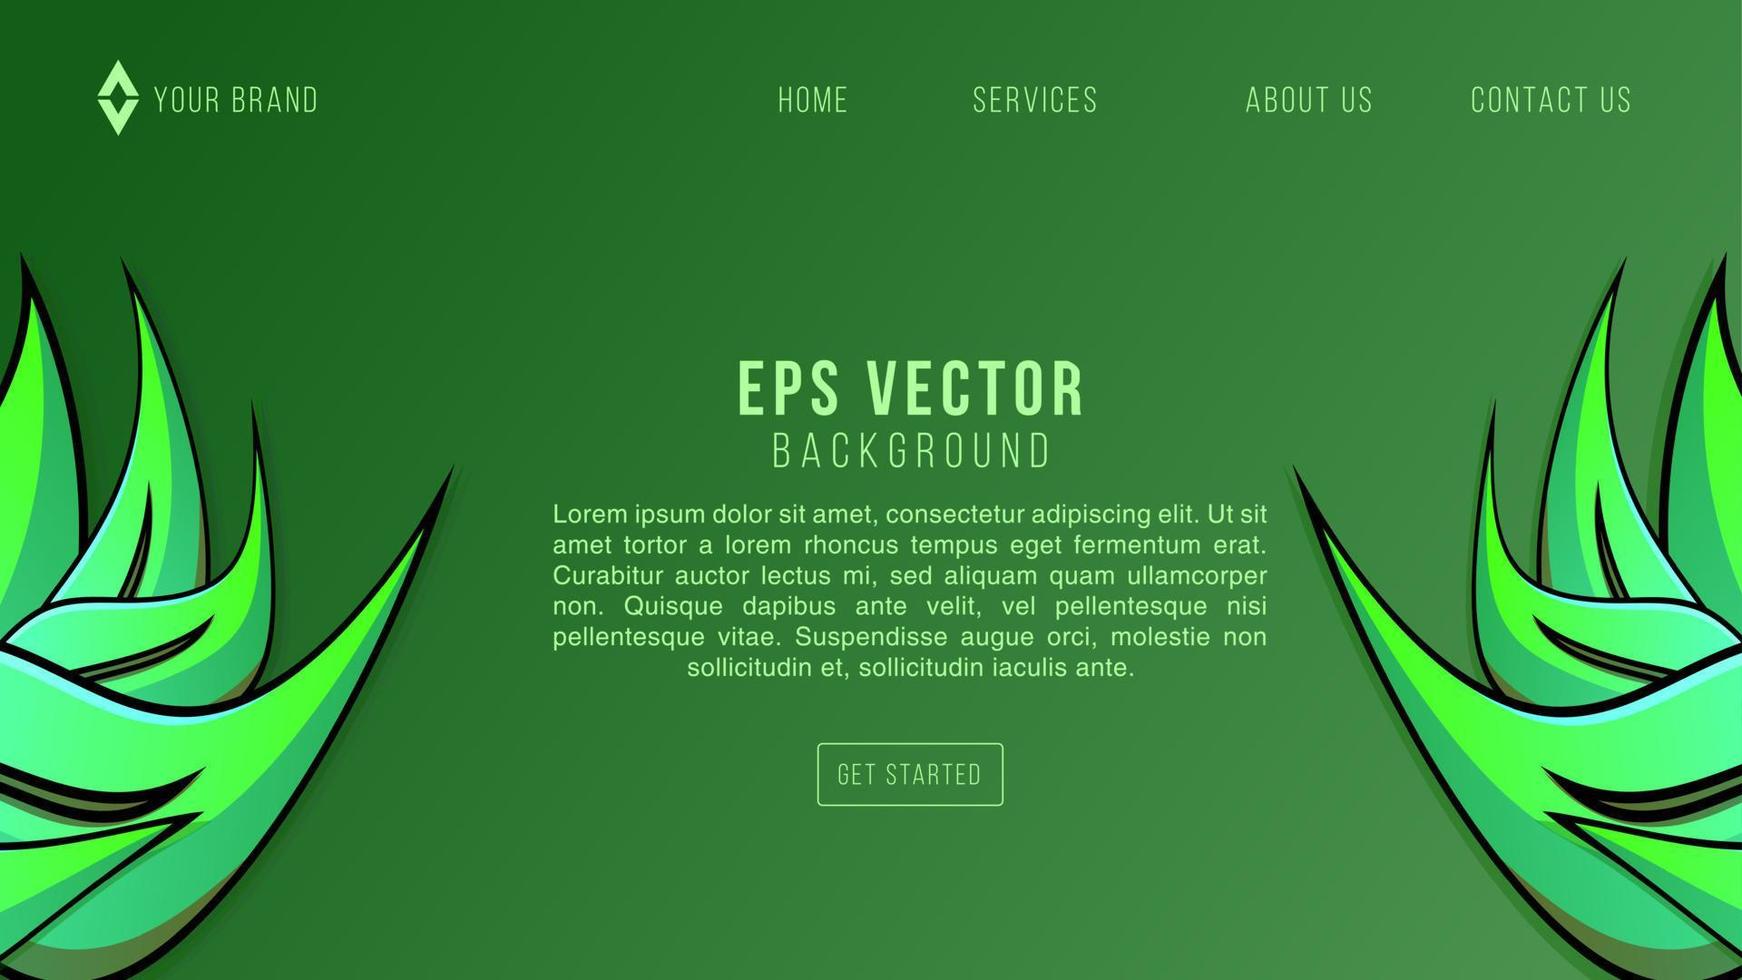 diseño web de hoja verde fondo abstracto limonada eps 10 vector para sitio web, página de inicio, página de inicio, página web, plantilla web